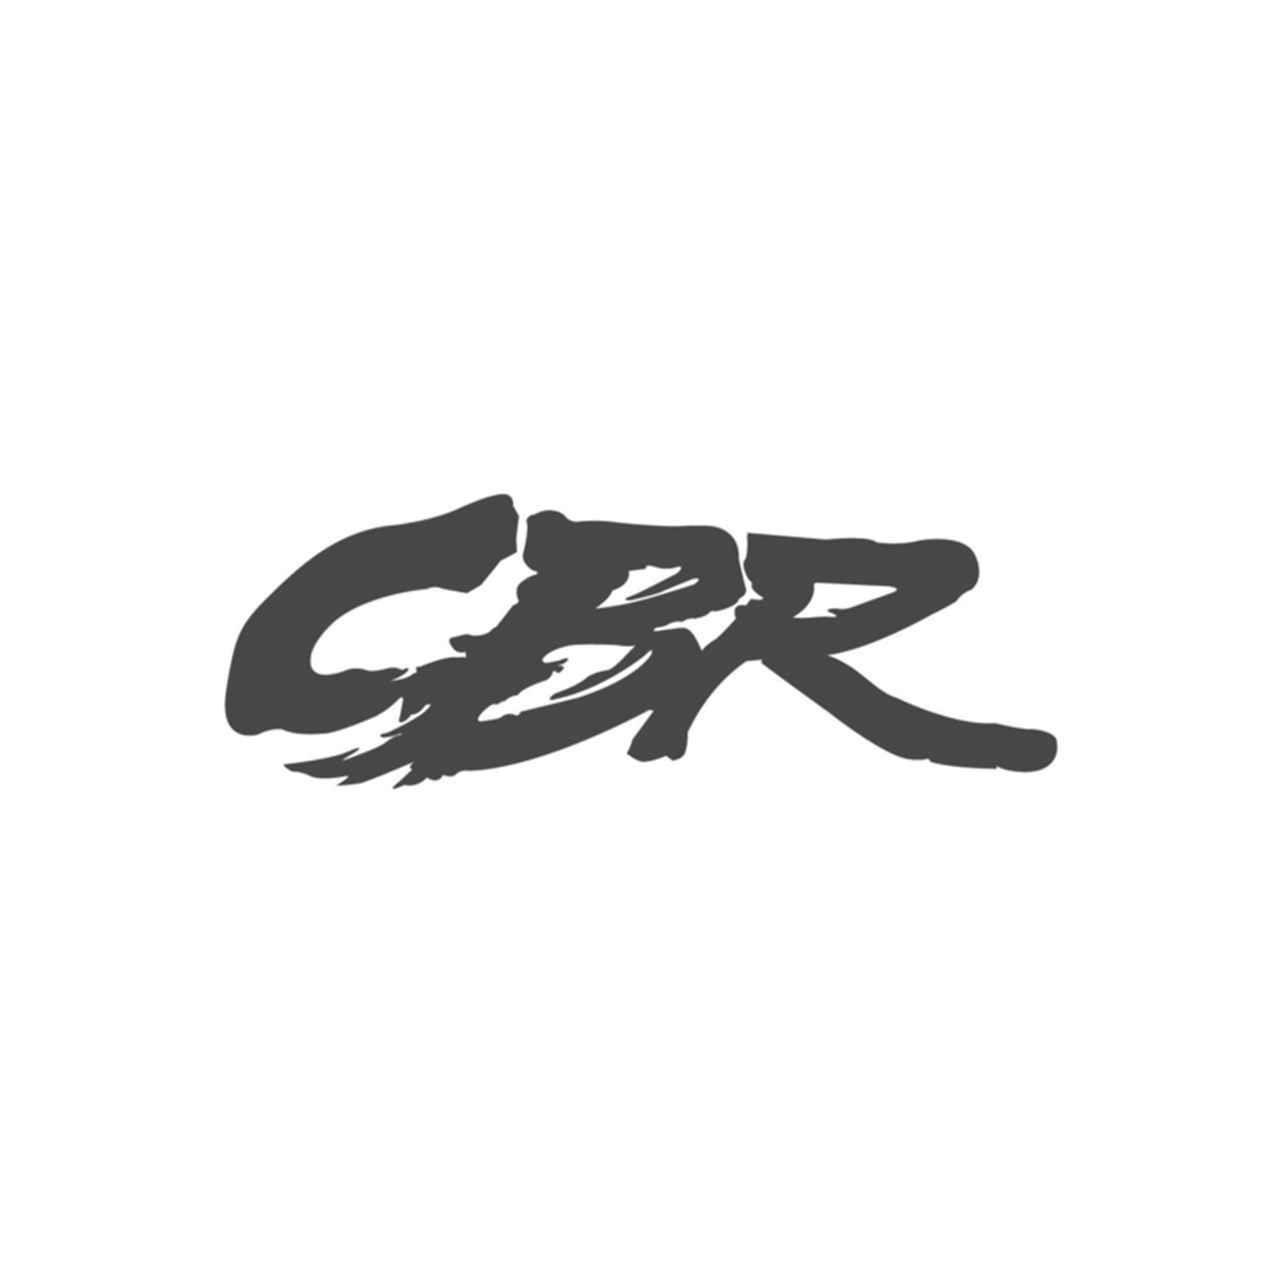 CBR Logo - Honda Cbr Logo Vinyl Decal Sticker | Aftermarket Decals | Vinyl ...